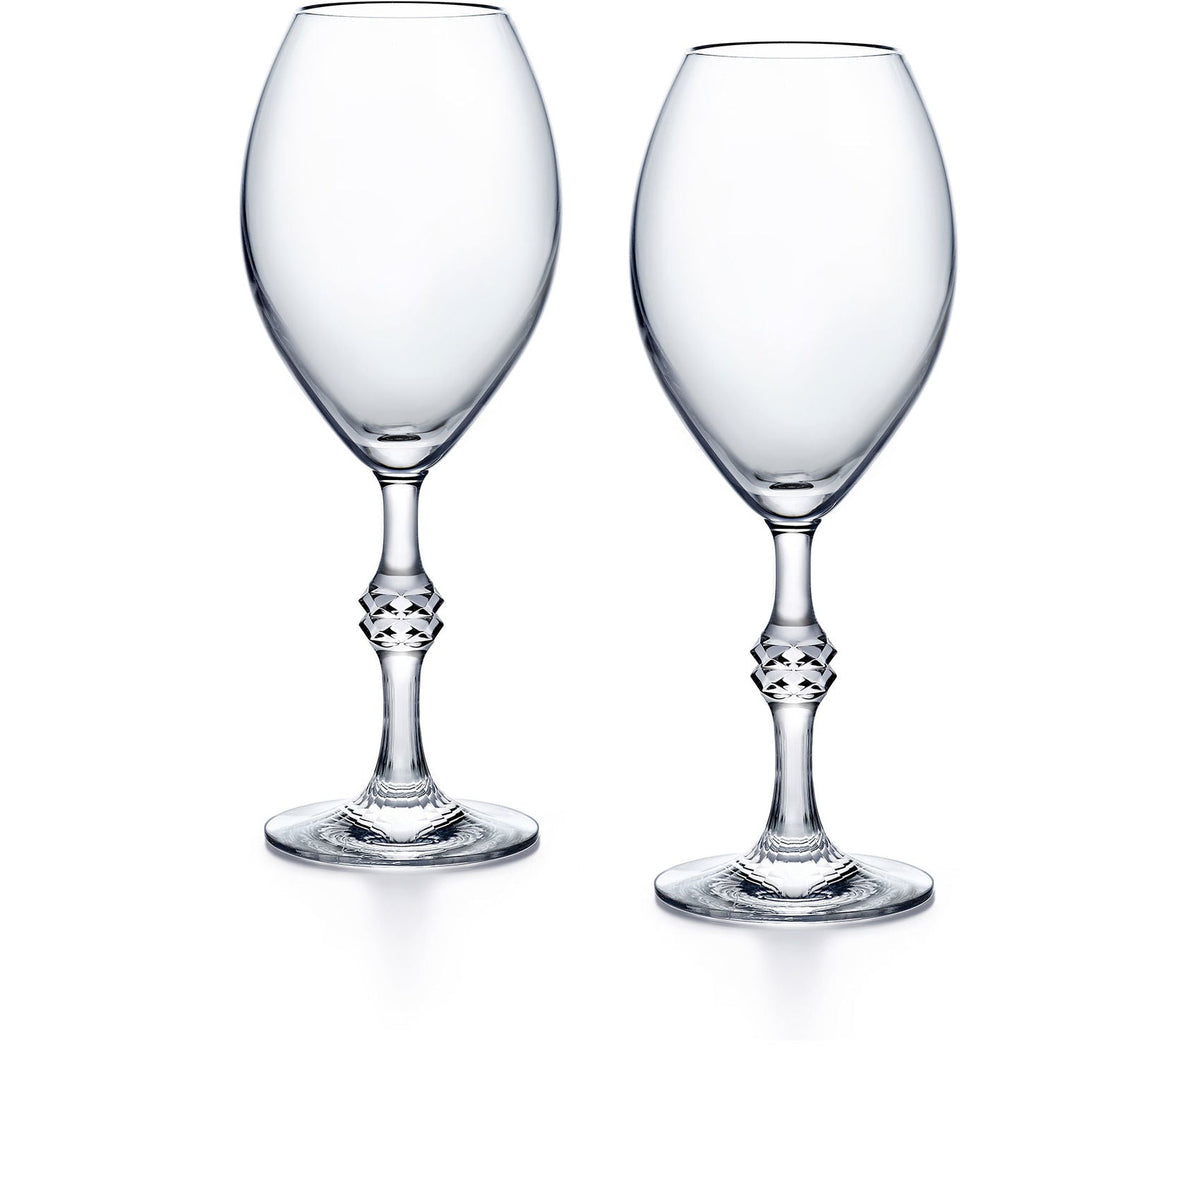 JCB Passion Champagne Glasses, Set of 2